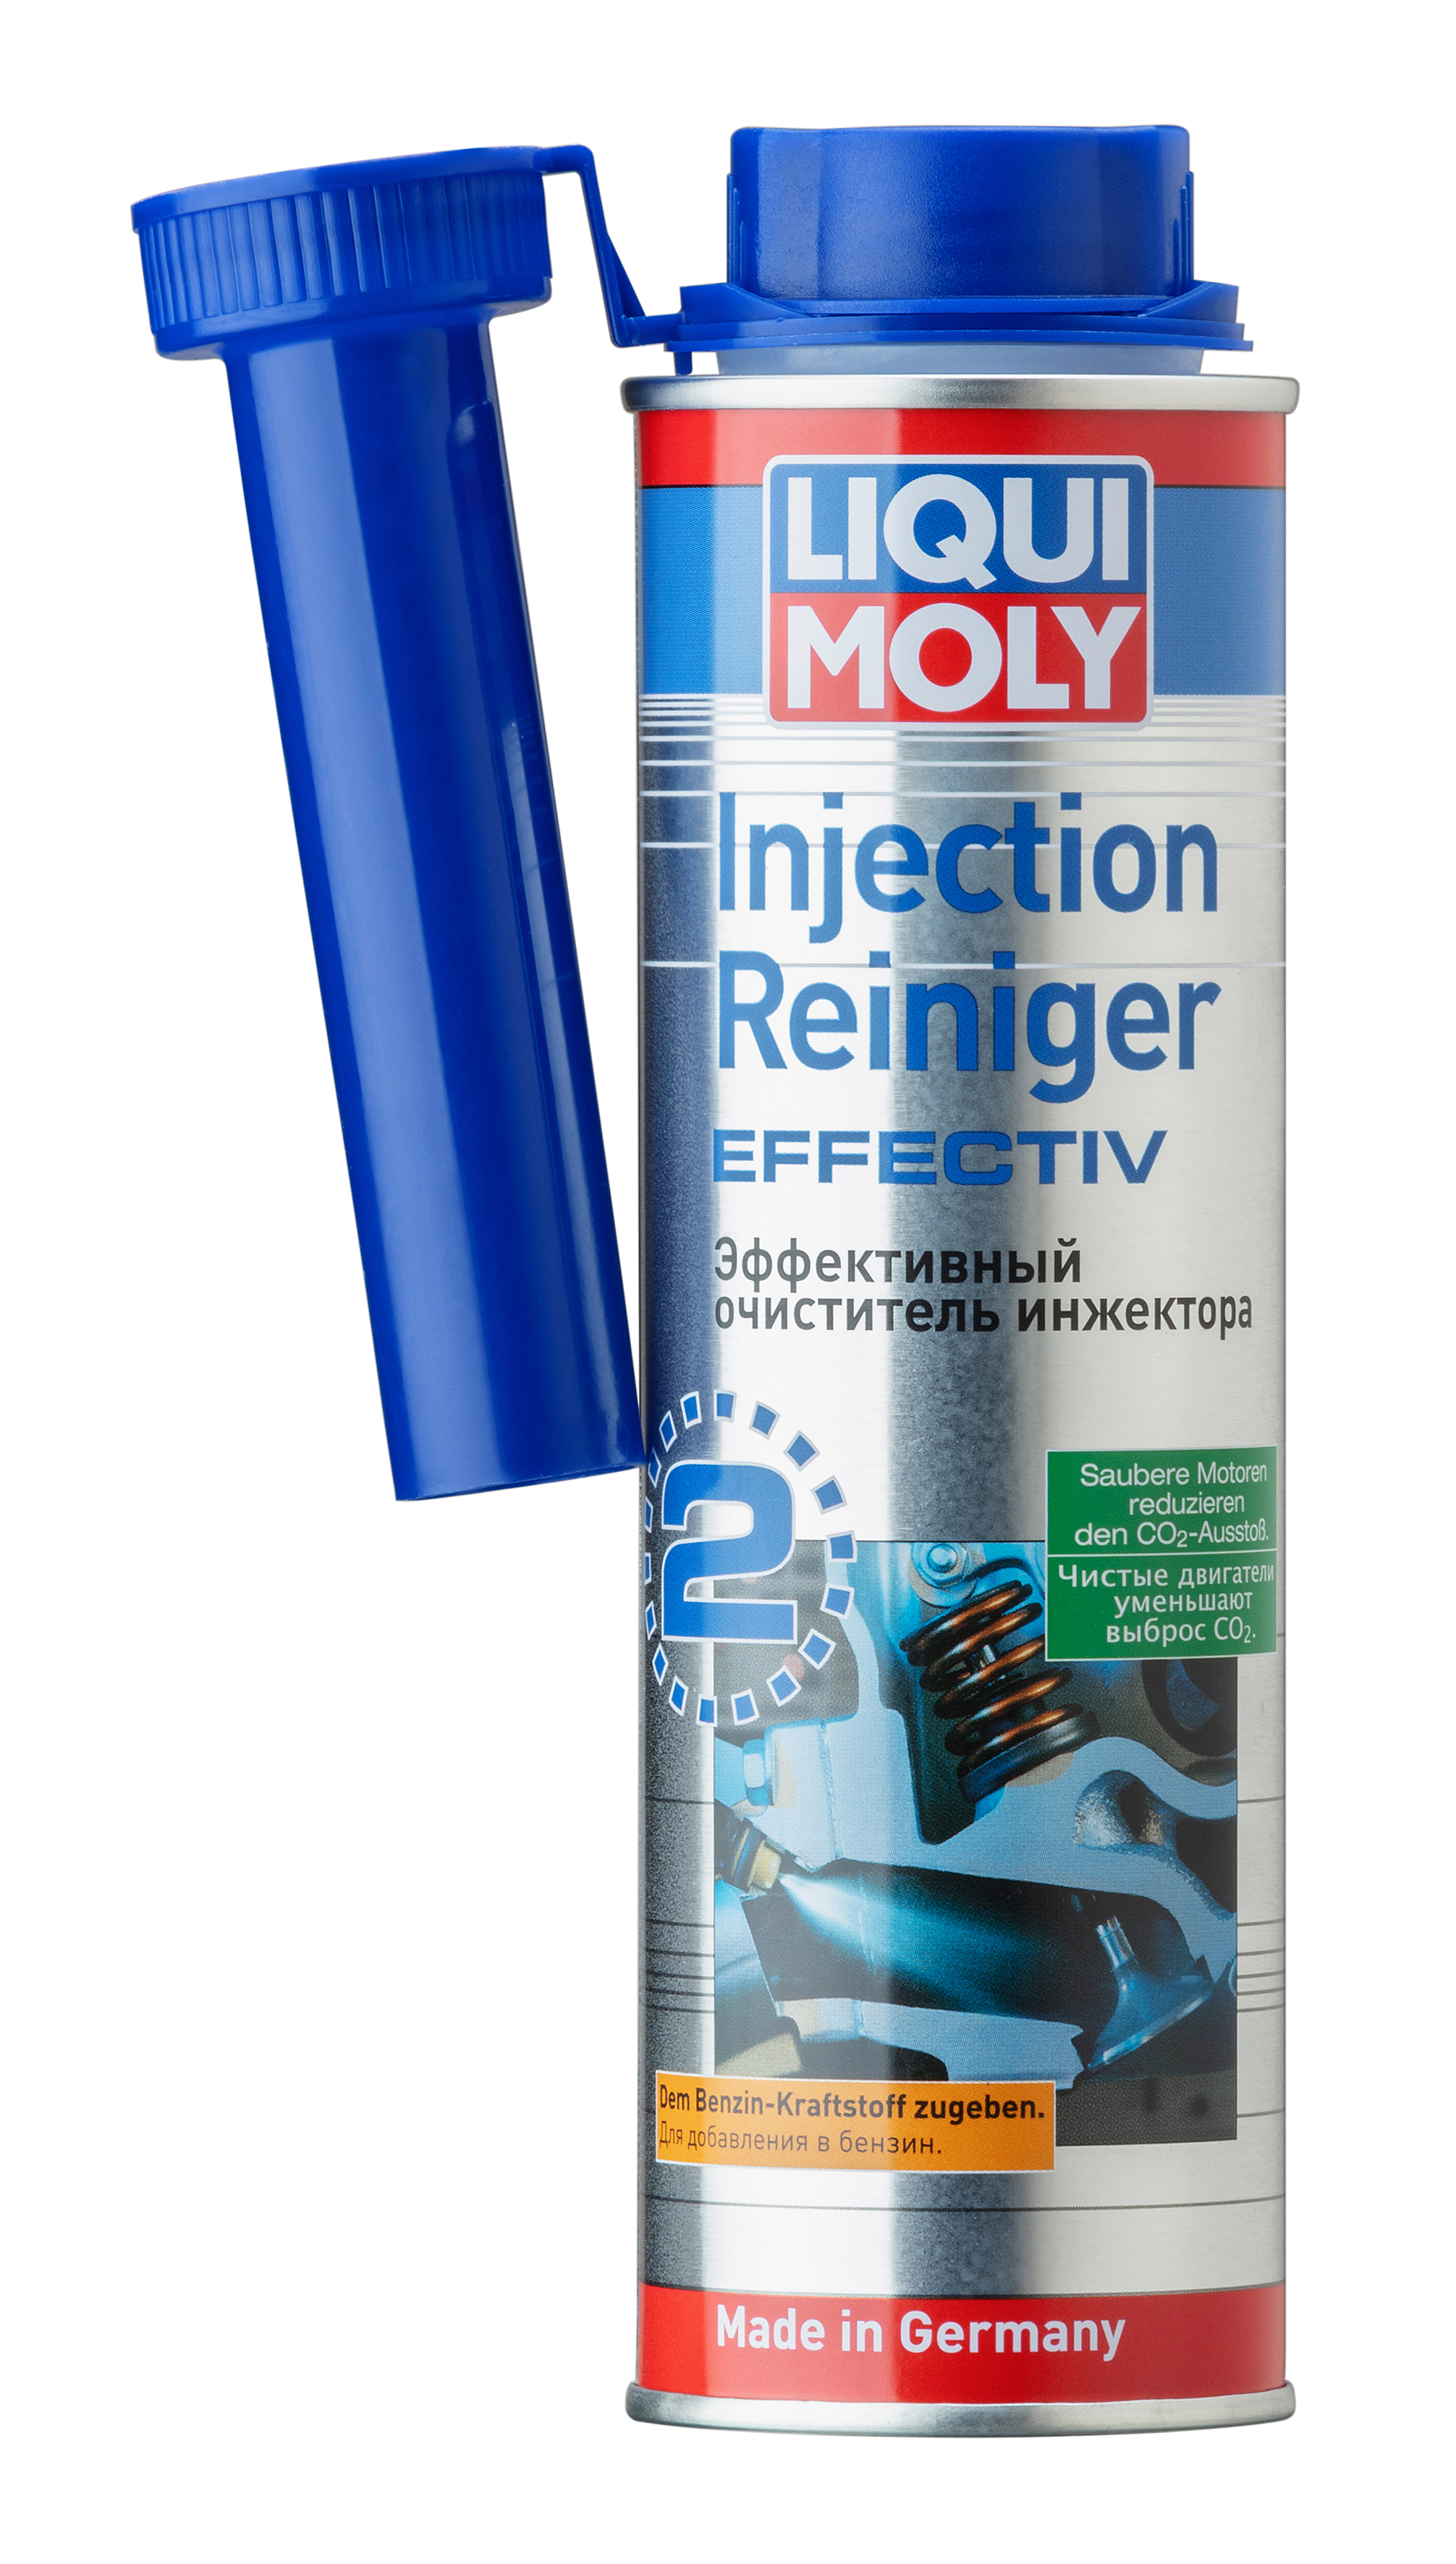 Очиститель инжектора эффективный Injection Reiniger Effectiv, 300мл - Liqui Moly 7555